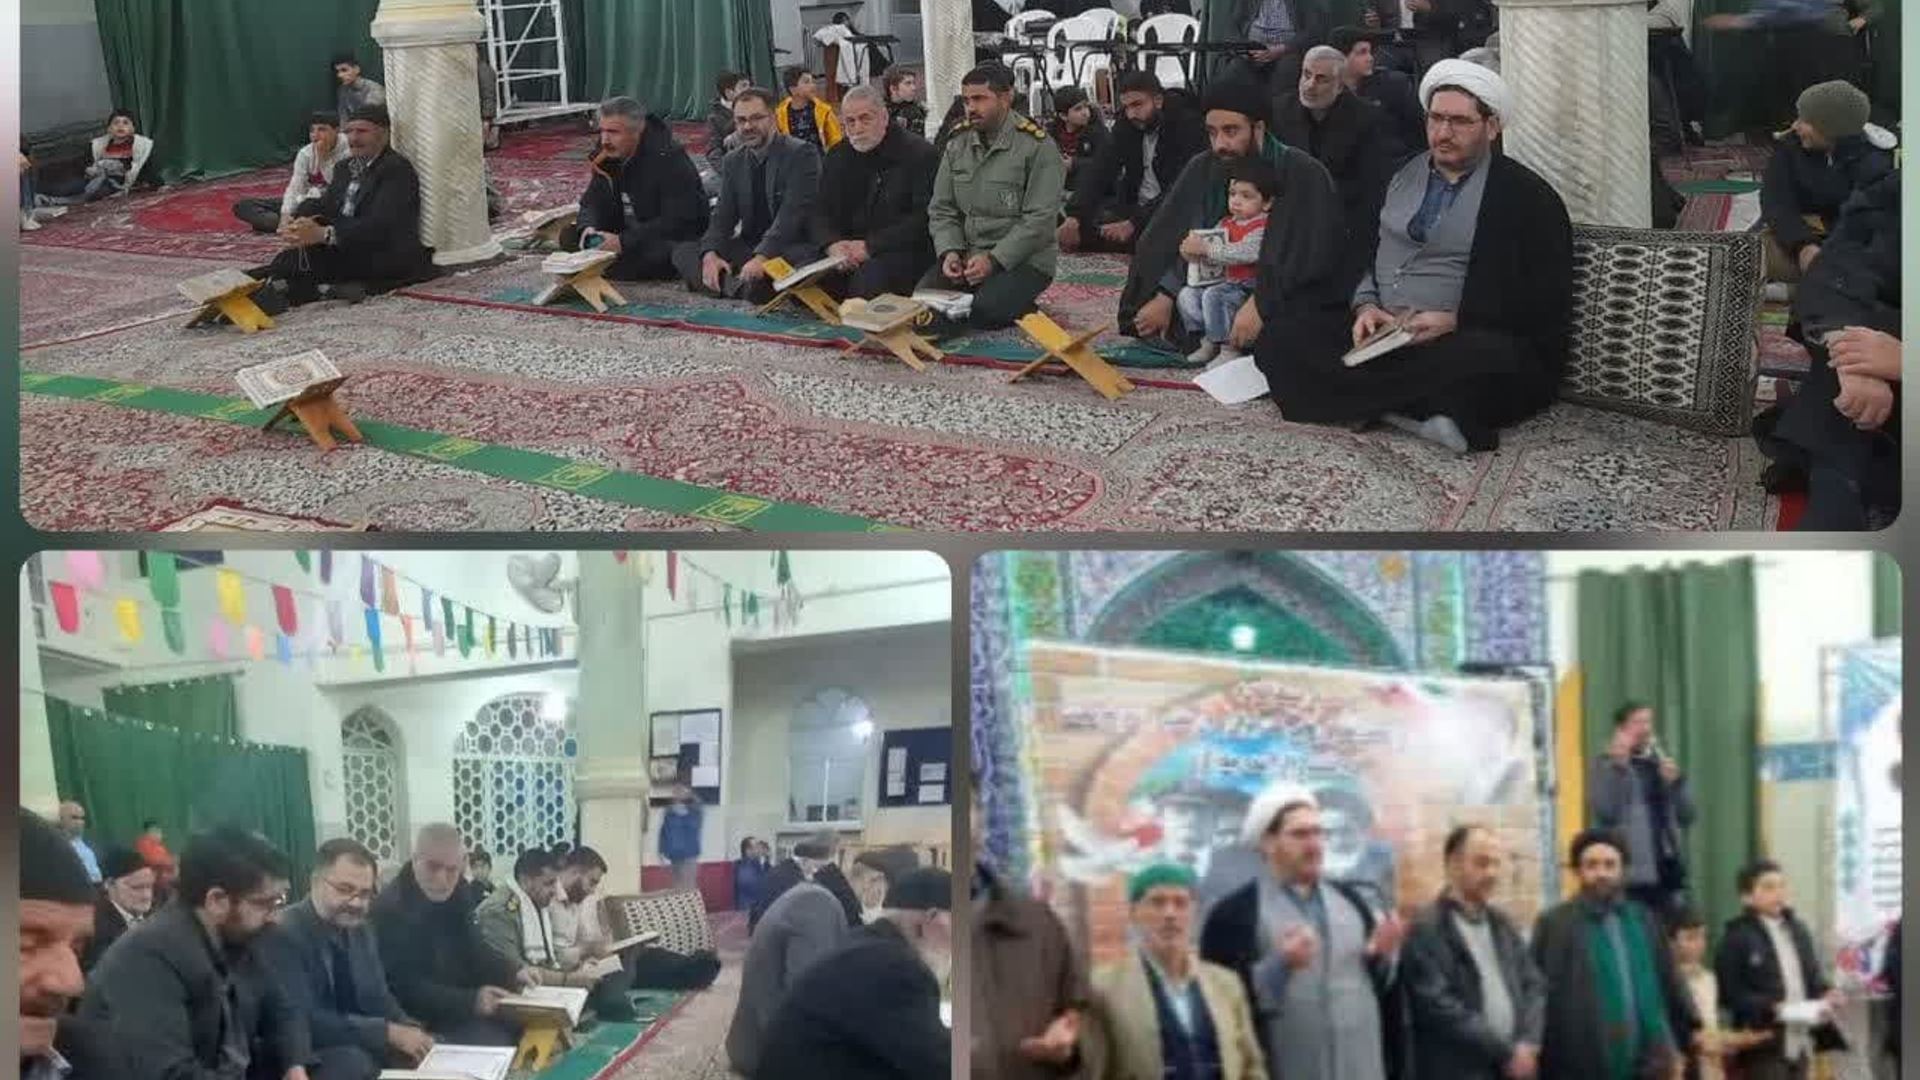 برگزاری مراسم جشنی با عنوان "بازگشت پیروزمندانه و تاریخی معمار کبیر انقلاب اسلامی به میهن اسلامی"